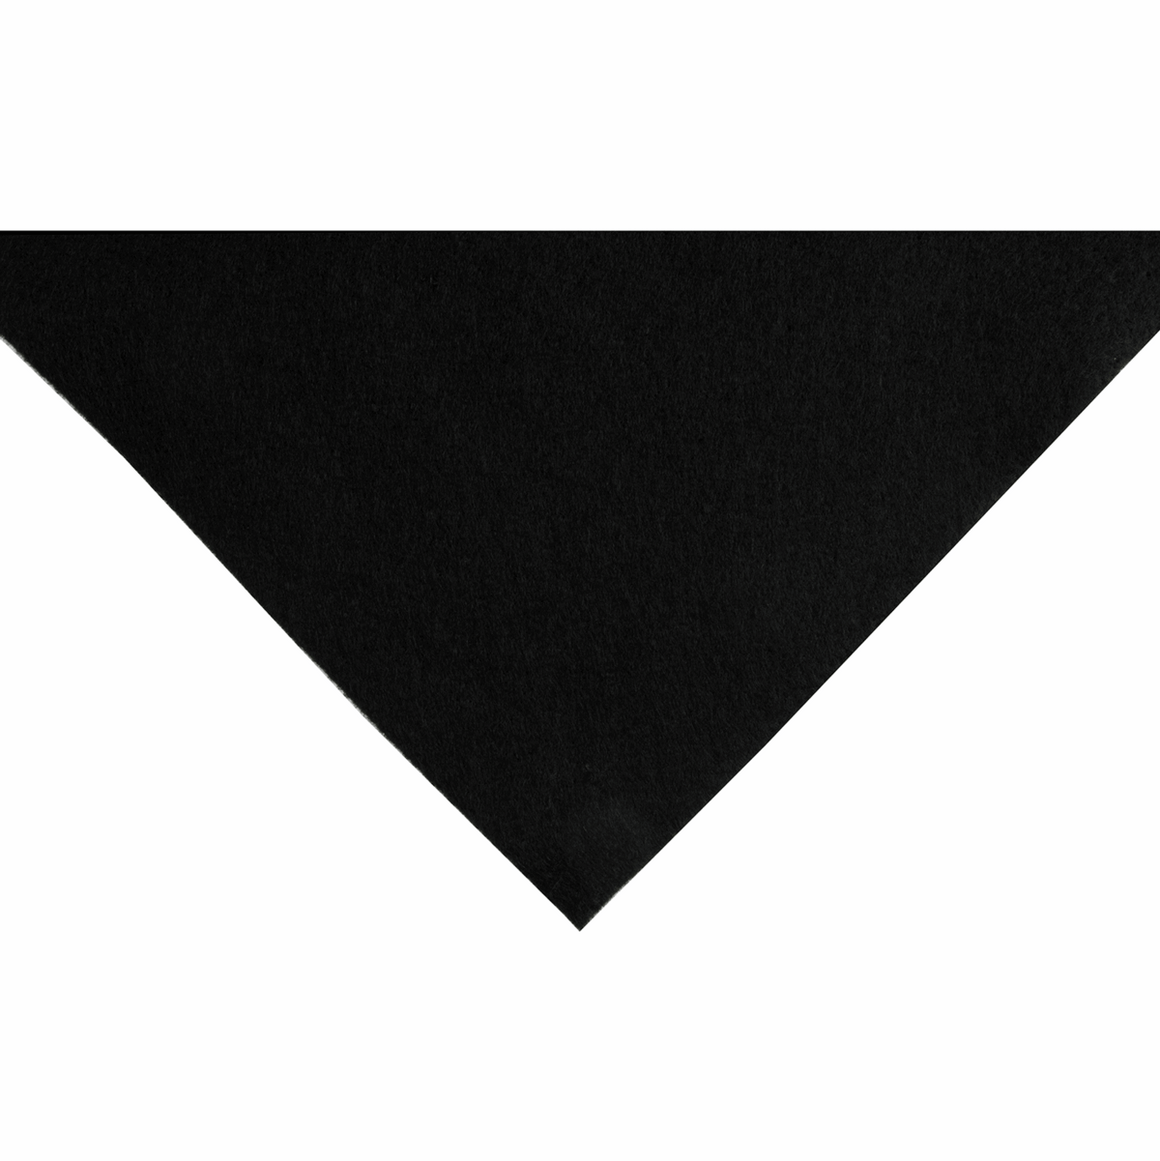 Black Acrylic Felt - 1 x A4 sheet (23cm x 30cm | 9 x 12 inches)